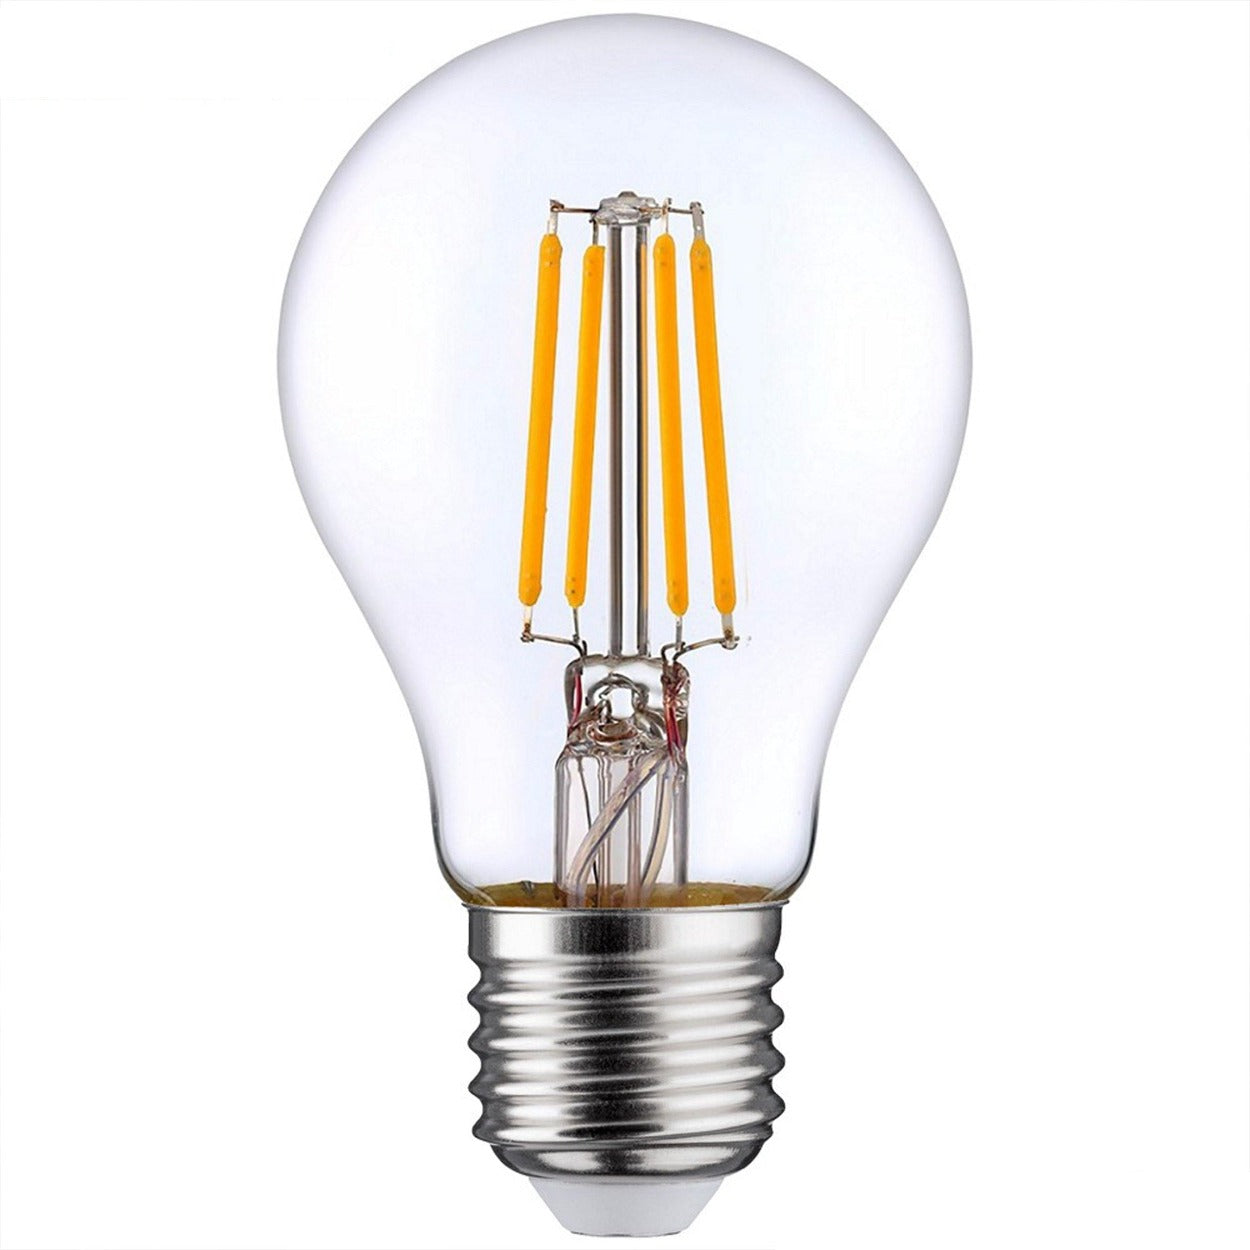 ANKUR GLO CLEAR A60 LAMP - Ankur Lighting